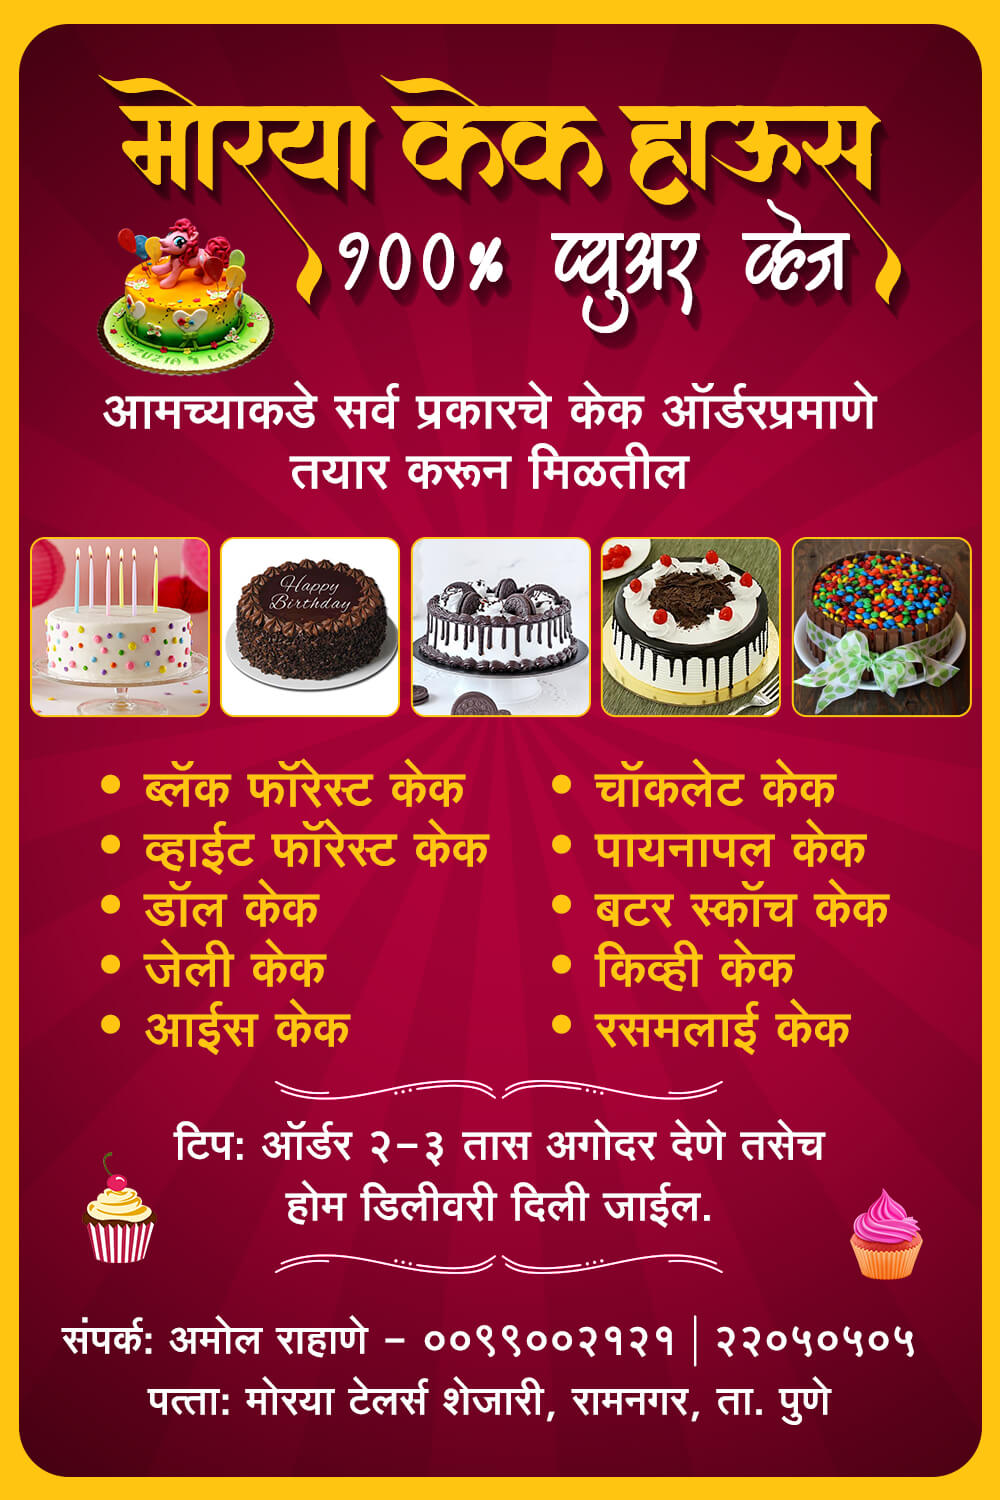 Cake flex marathi | Banner design for cake shop